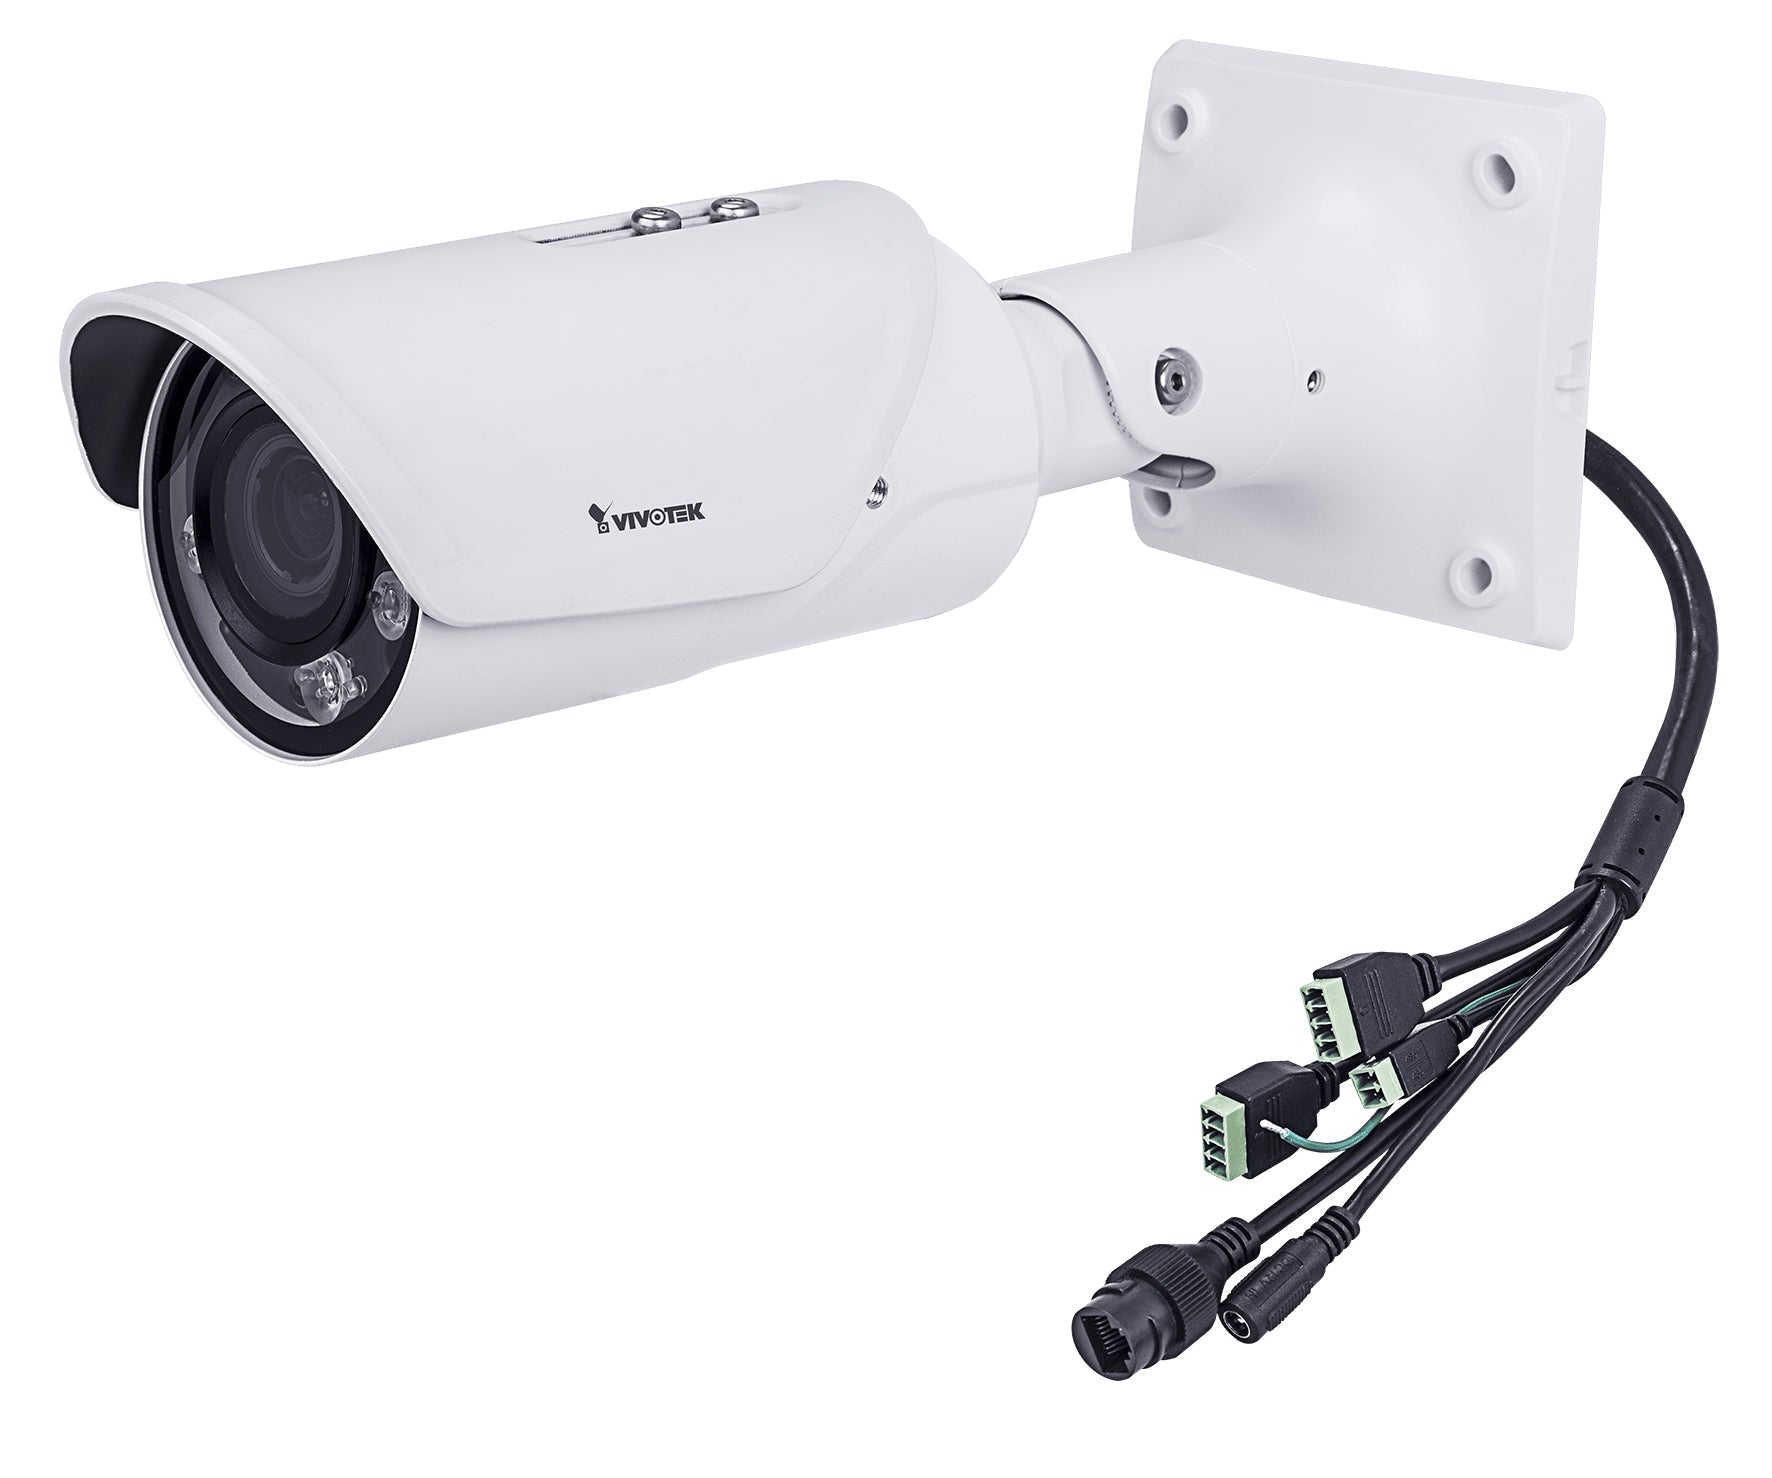 Vivotek Ib8377-Eht Security Camera Ip Security Camera Outdoor Bullet 2688 X 1520 Pixels Ceiling/Wall